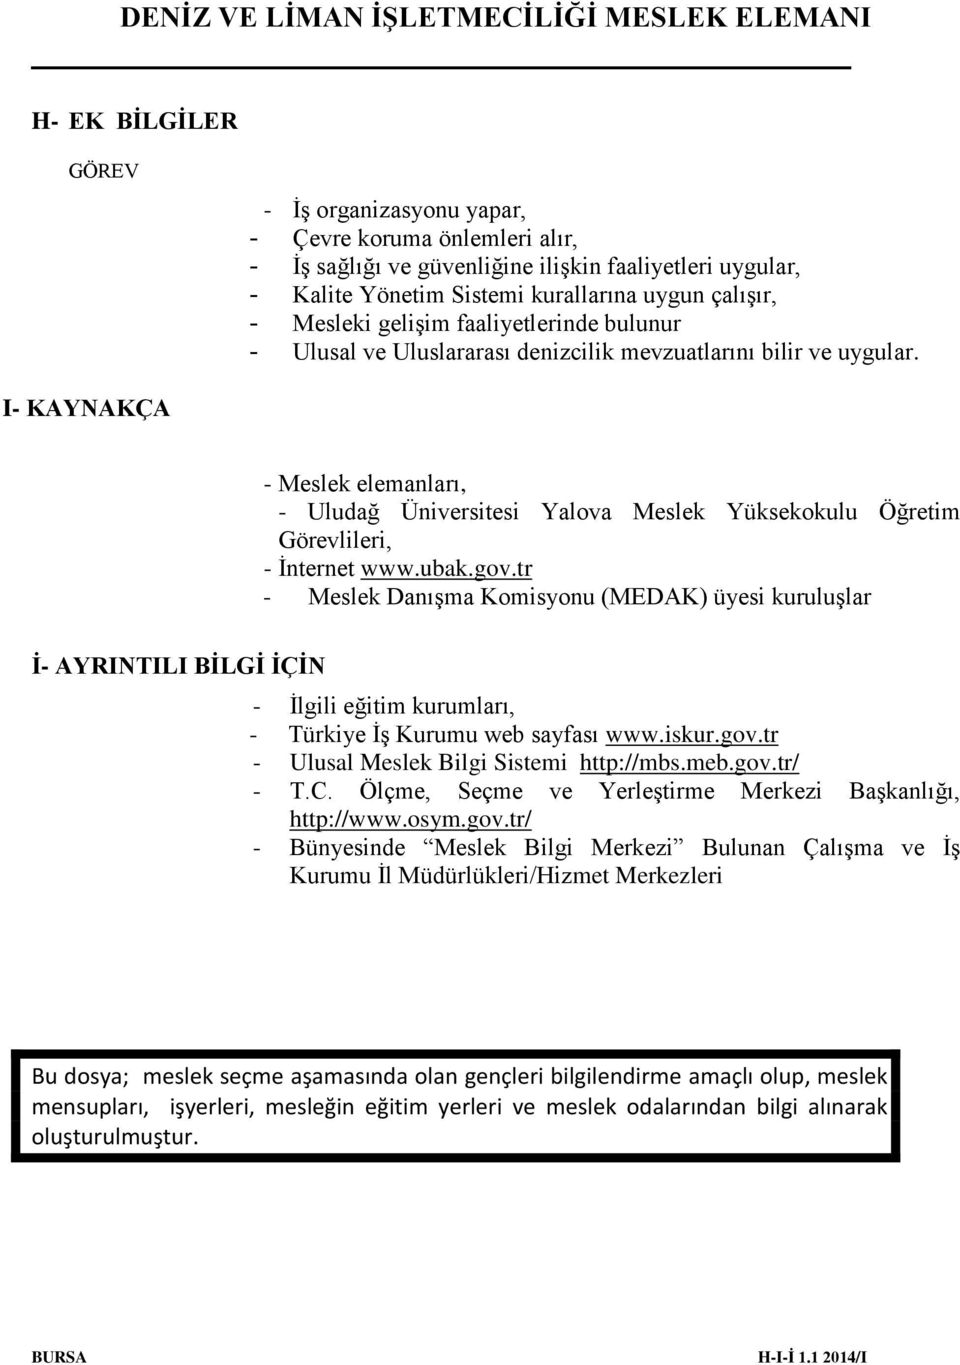 I- KAYNAKÇA - Meslek elemanları, - Uludağ Üniversitesi Yalova Meslek Yüksekokulu Öğretim Görevlileri, - İnternet www.ubak.gov.